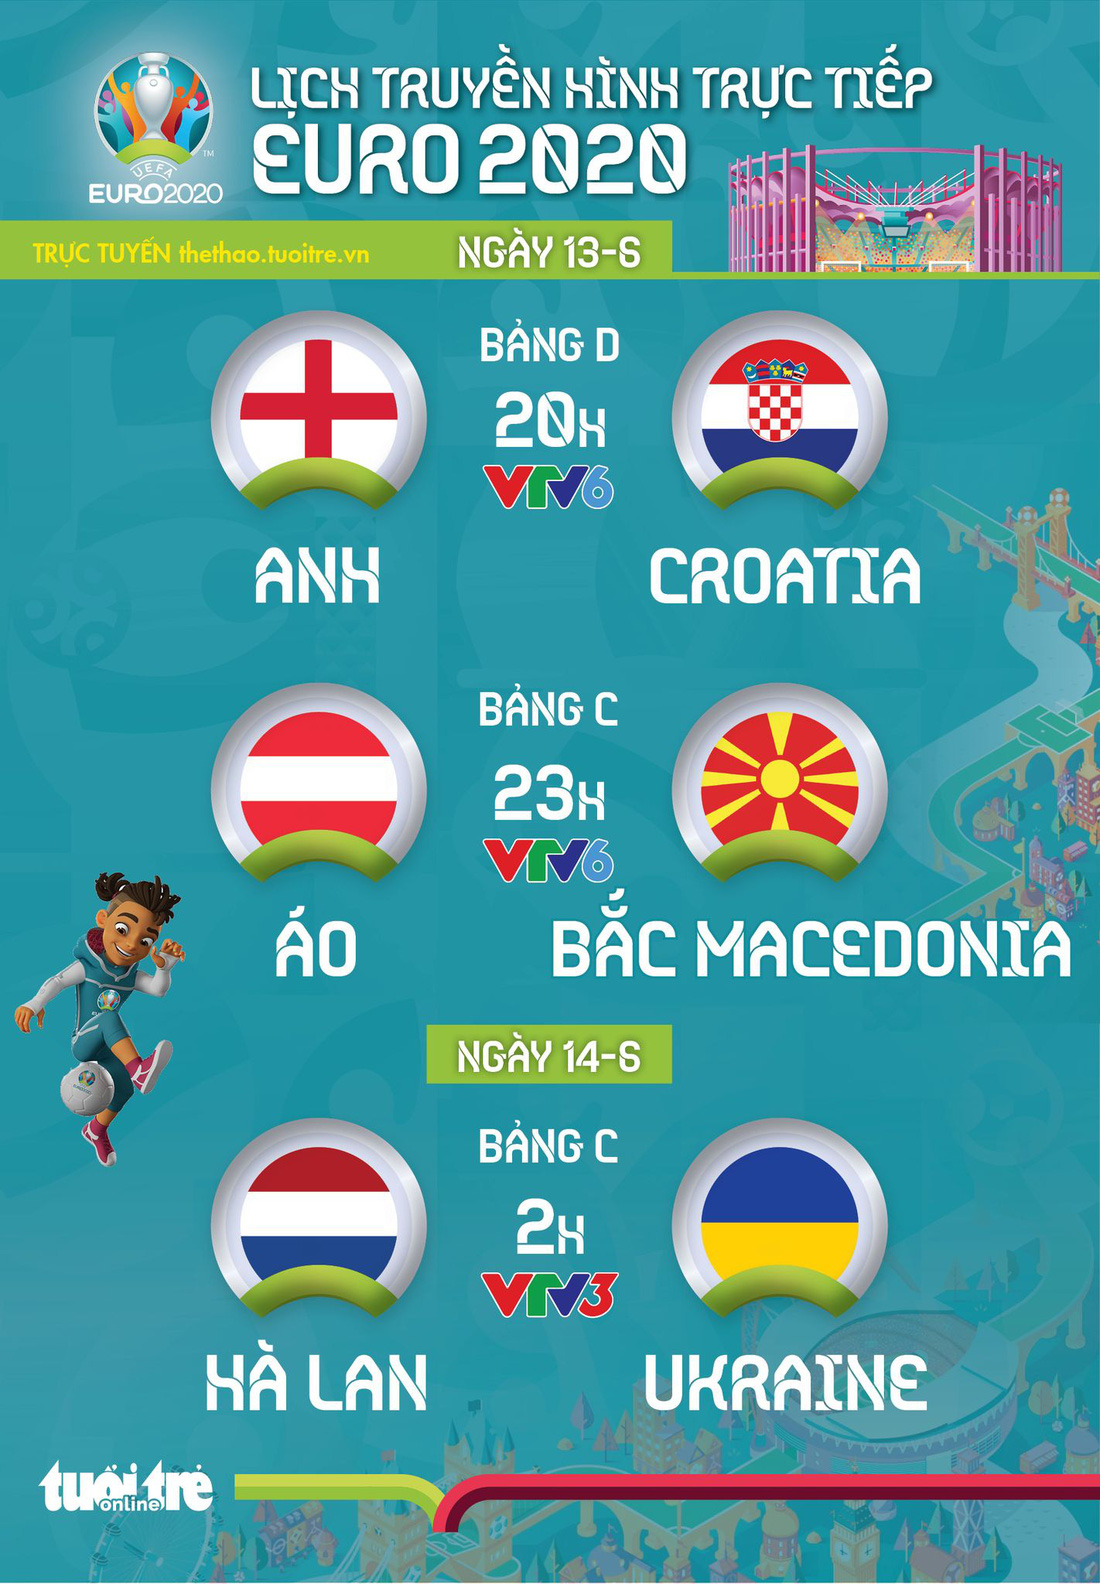 Lịch trực tiếp Euro 2020 ngày 13-6: Anh - Croatia, Áo - Bắc Macedonia, Hà Lan - Ukraine - Ảnh 1.